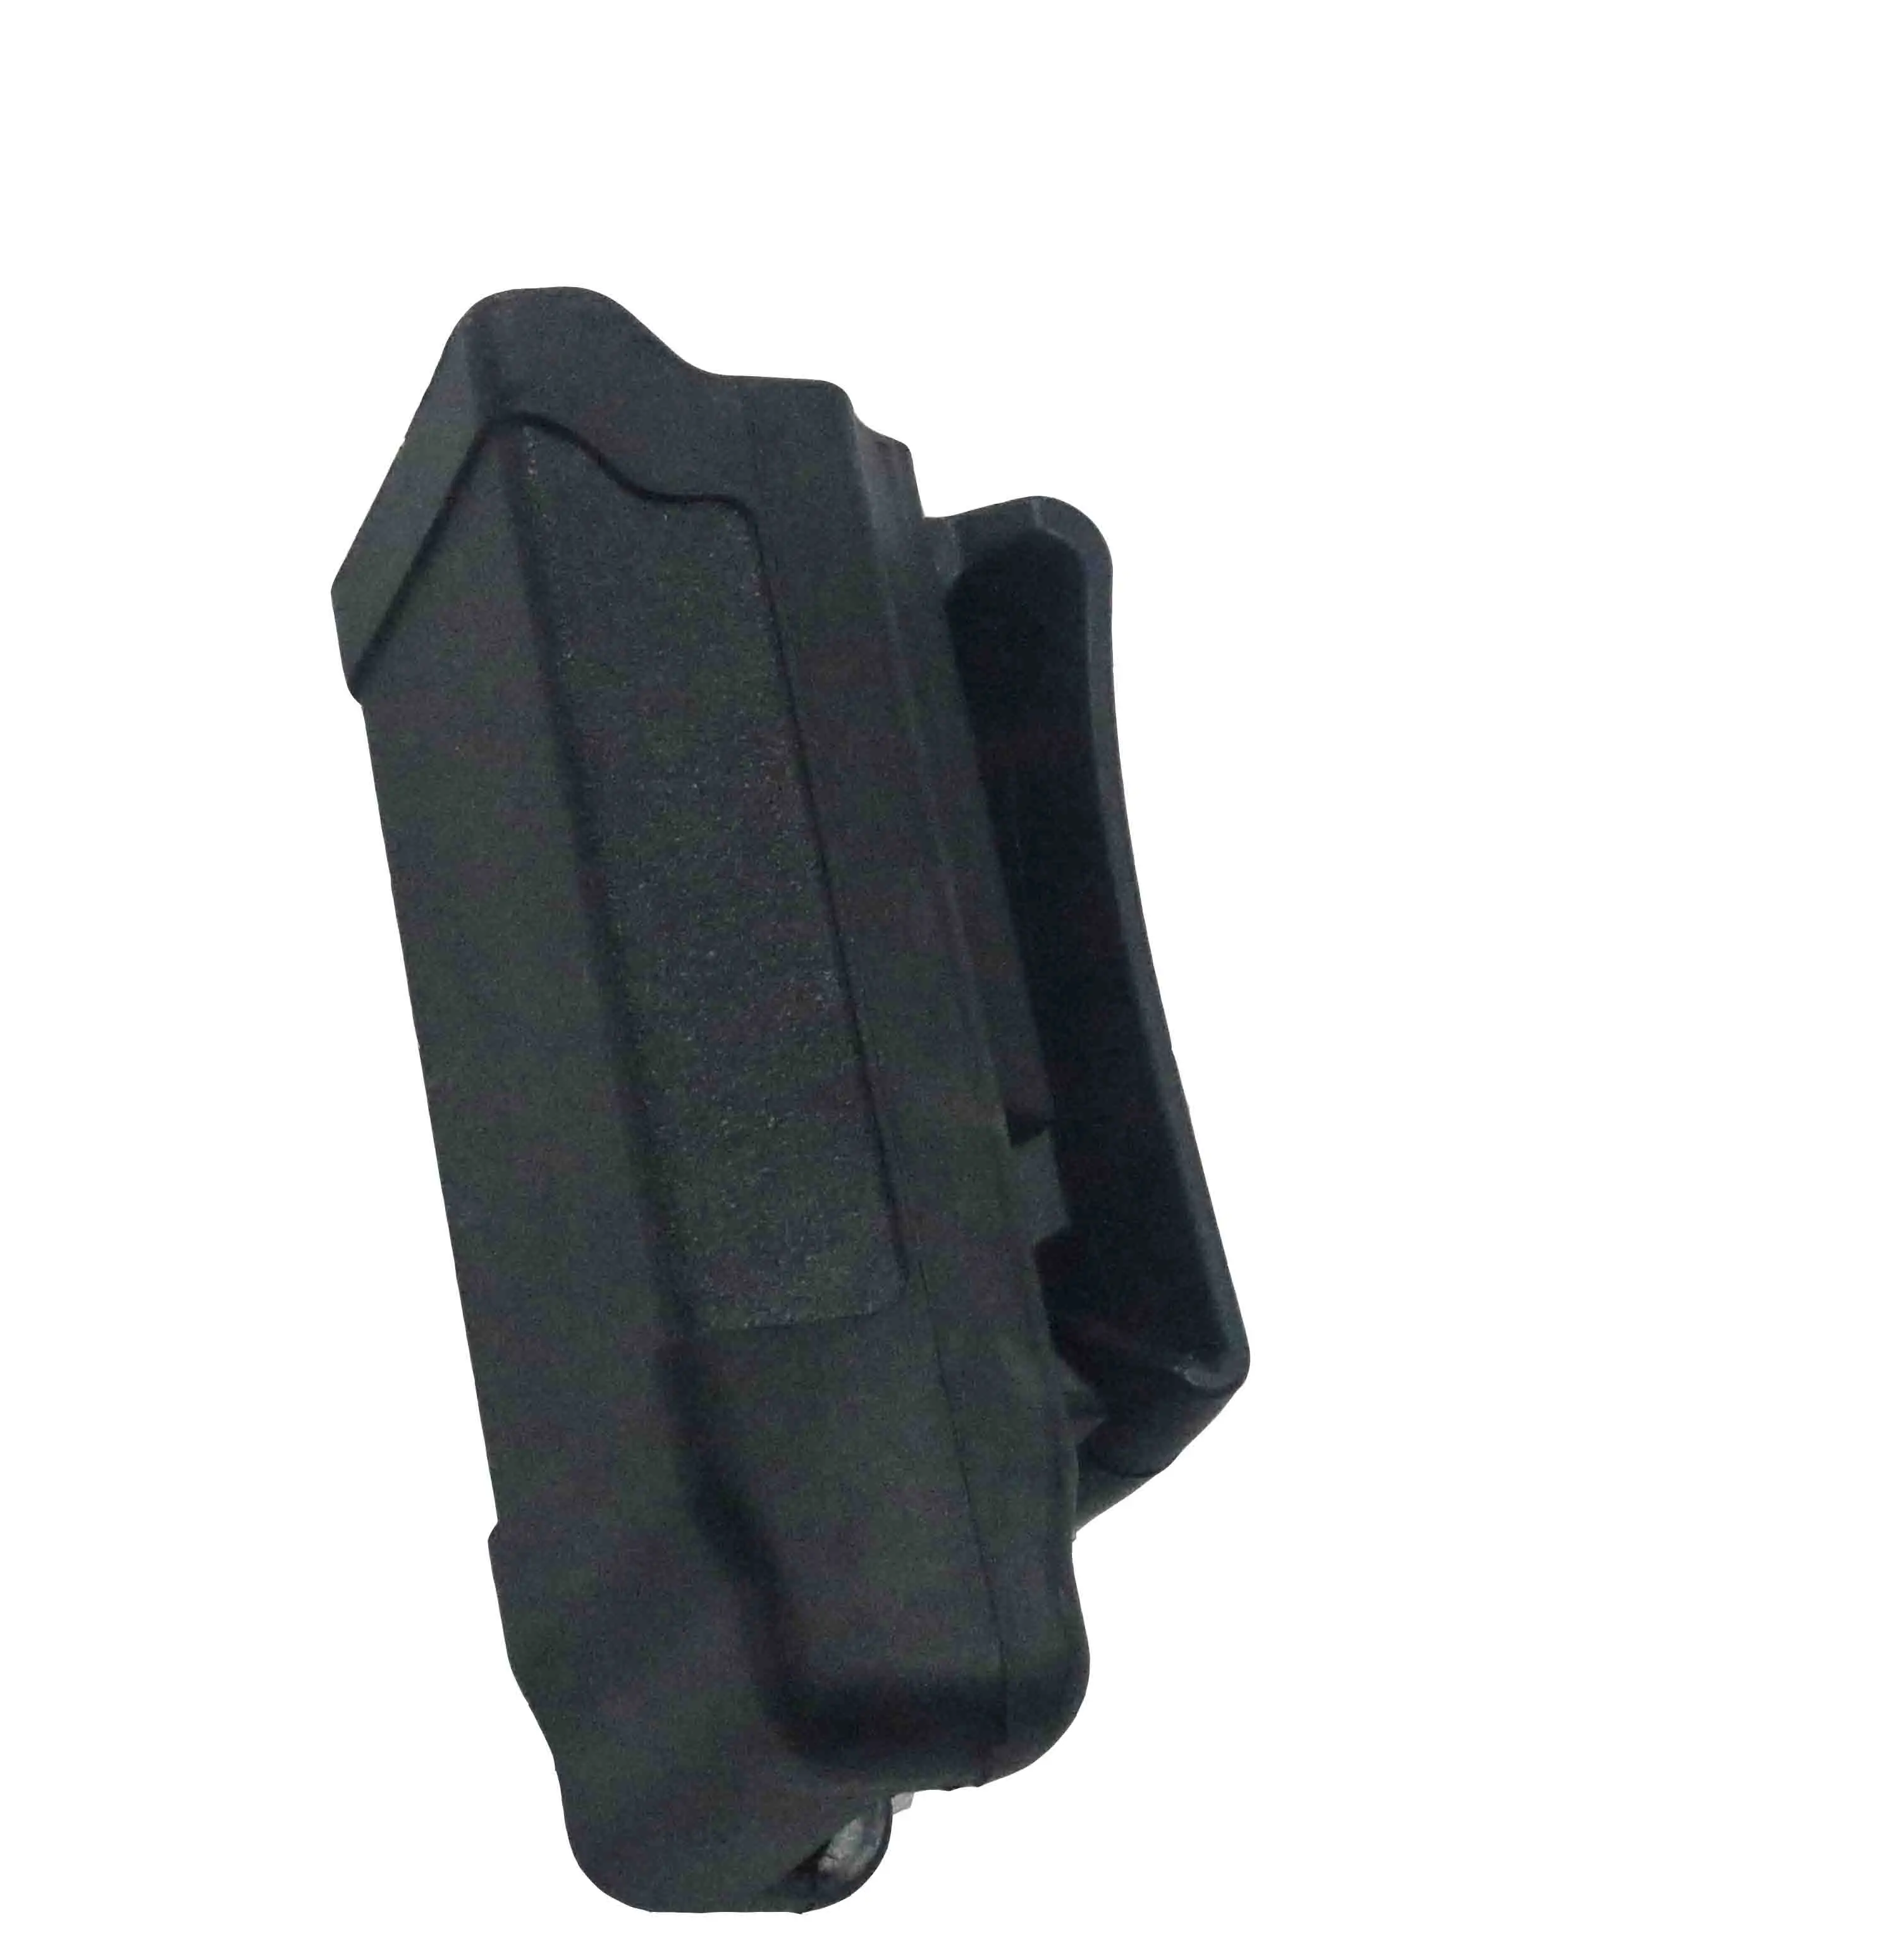 Тактический страйкбол CQC подсумок перевозчик из углеродного волокна 9 мм до. 45 калибра для GL Colt SP226 HK USP принадлежности для охотничьего пистолета - Цвет: BK